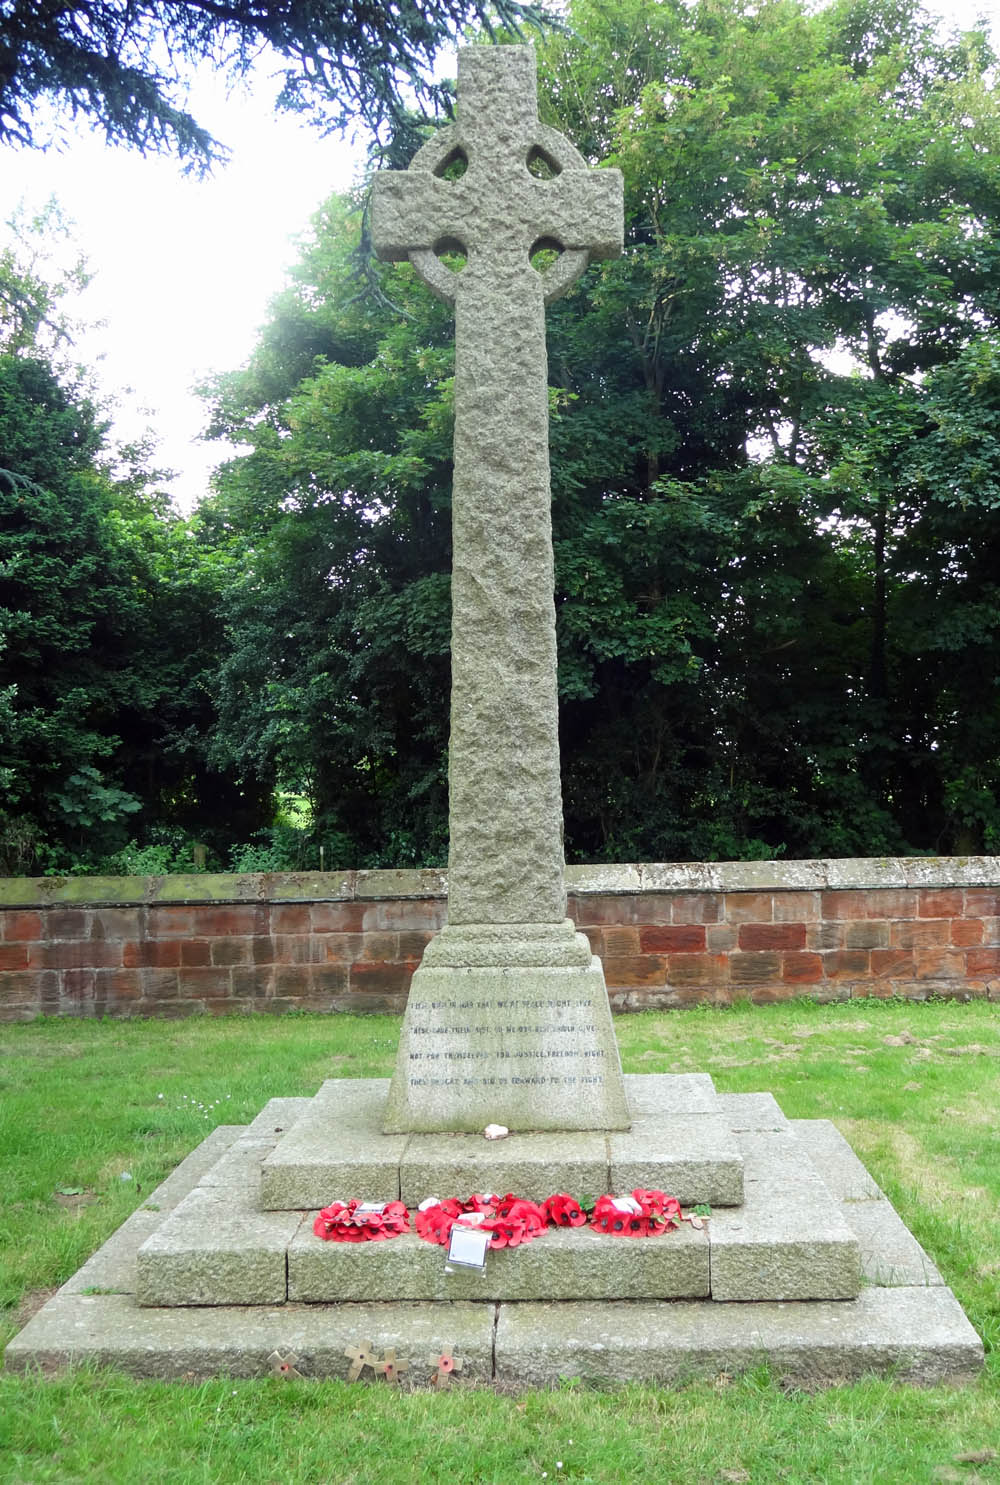 Memorial at St. Thomas's Kerresley